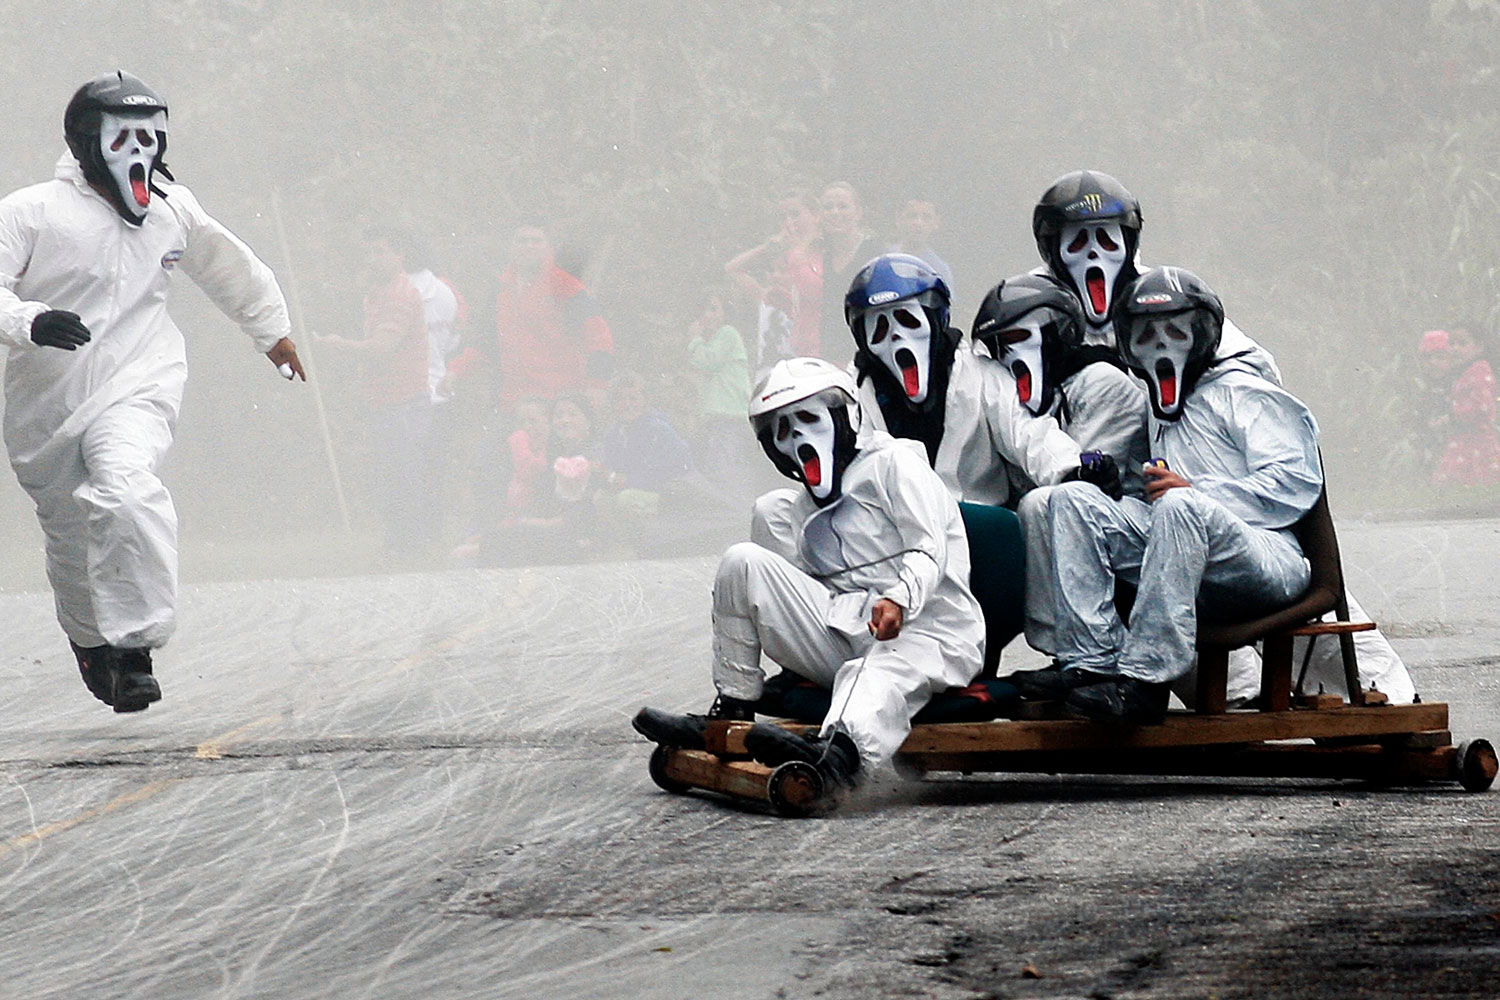 Se celebra en las calles de Medellín el Festival de Carros de Rodillos con unos 2.000 participantes